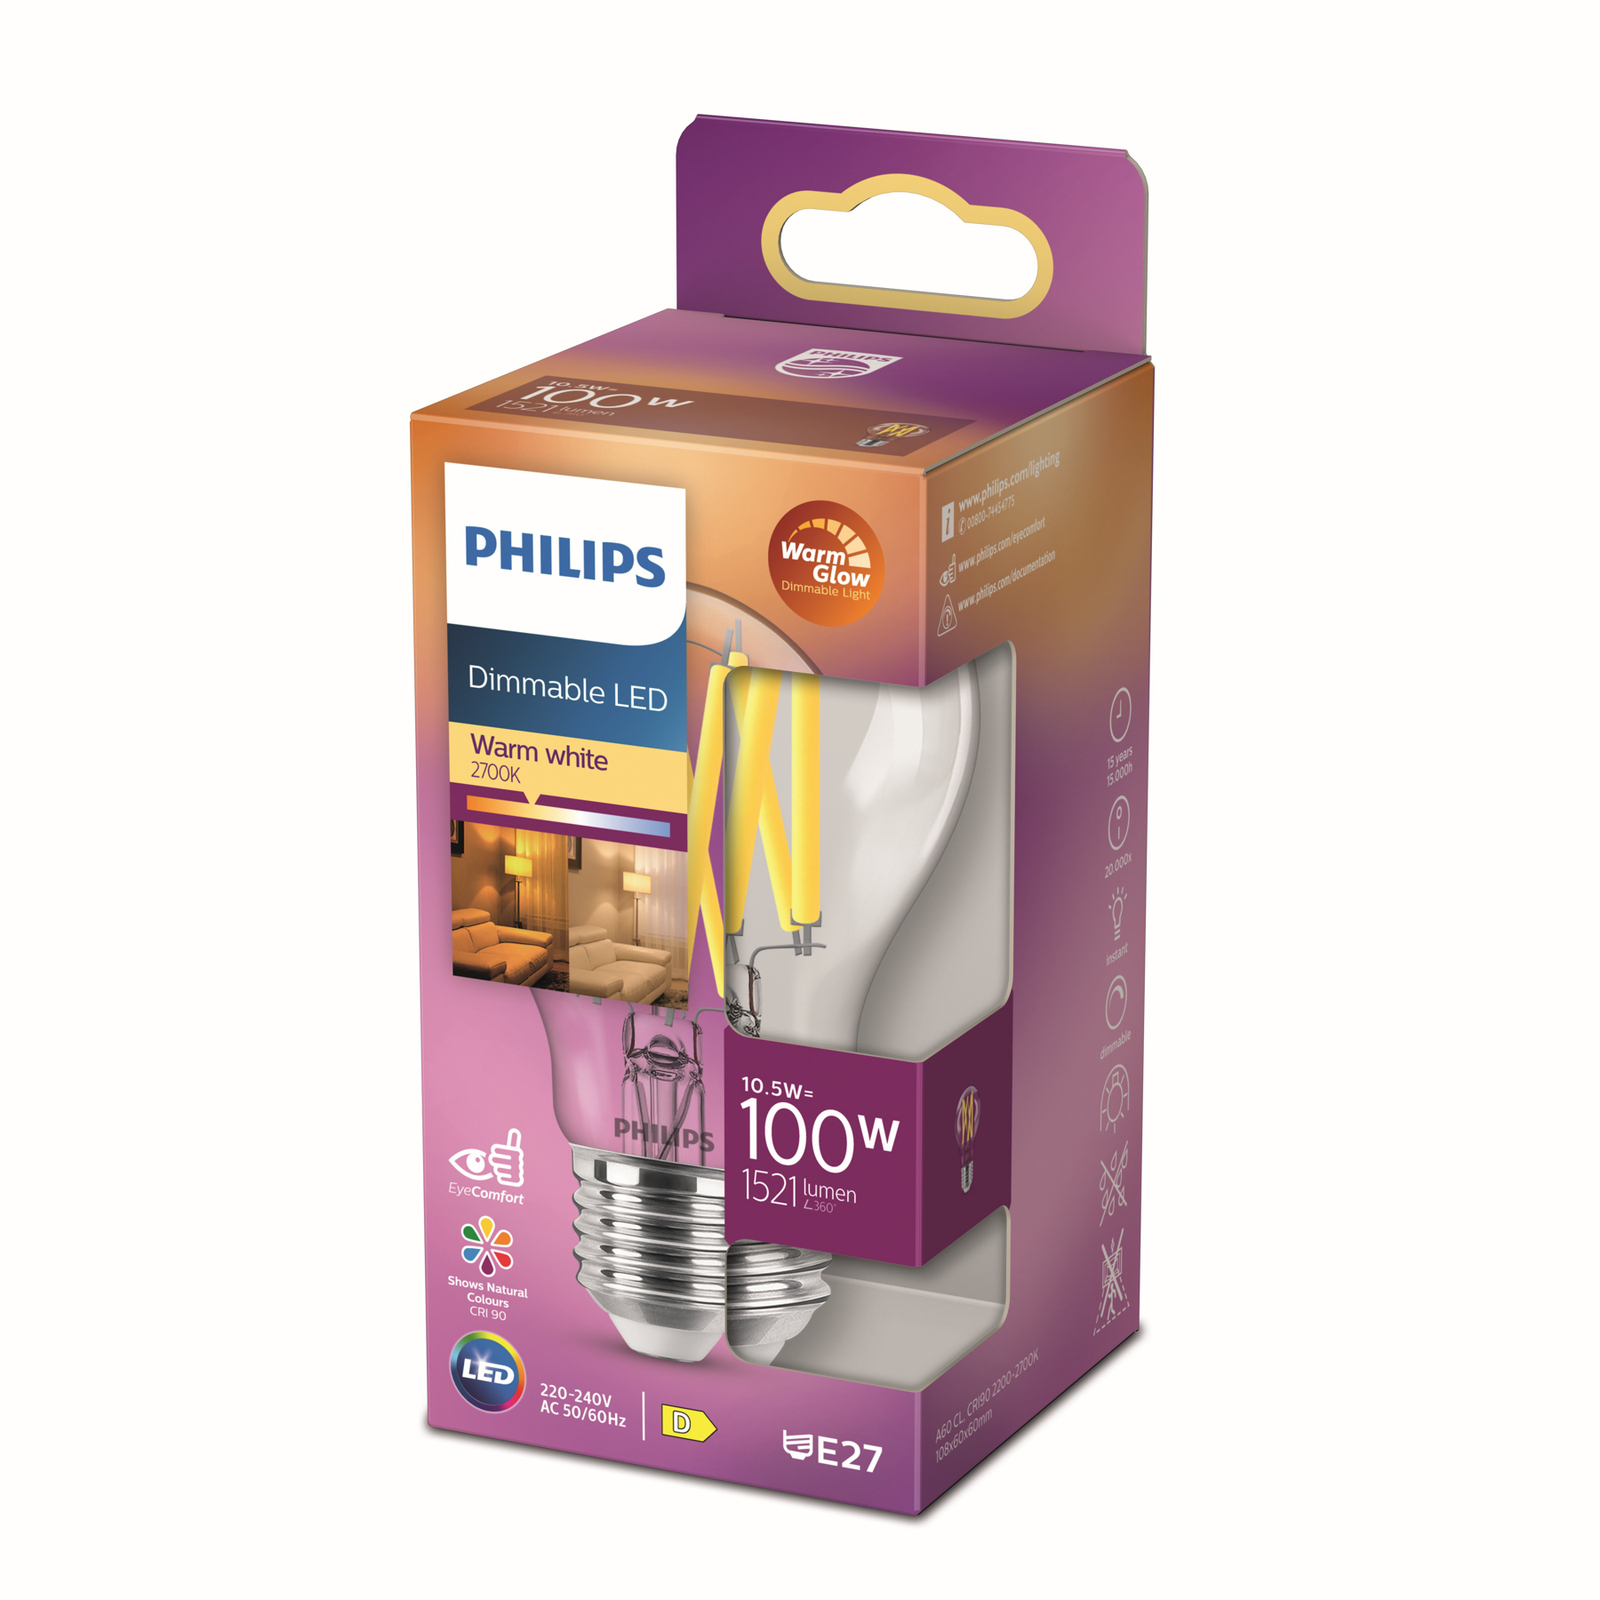 Philips LED Classic WarmGlow E27 A60 10,5W klar